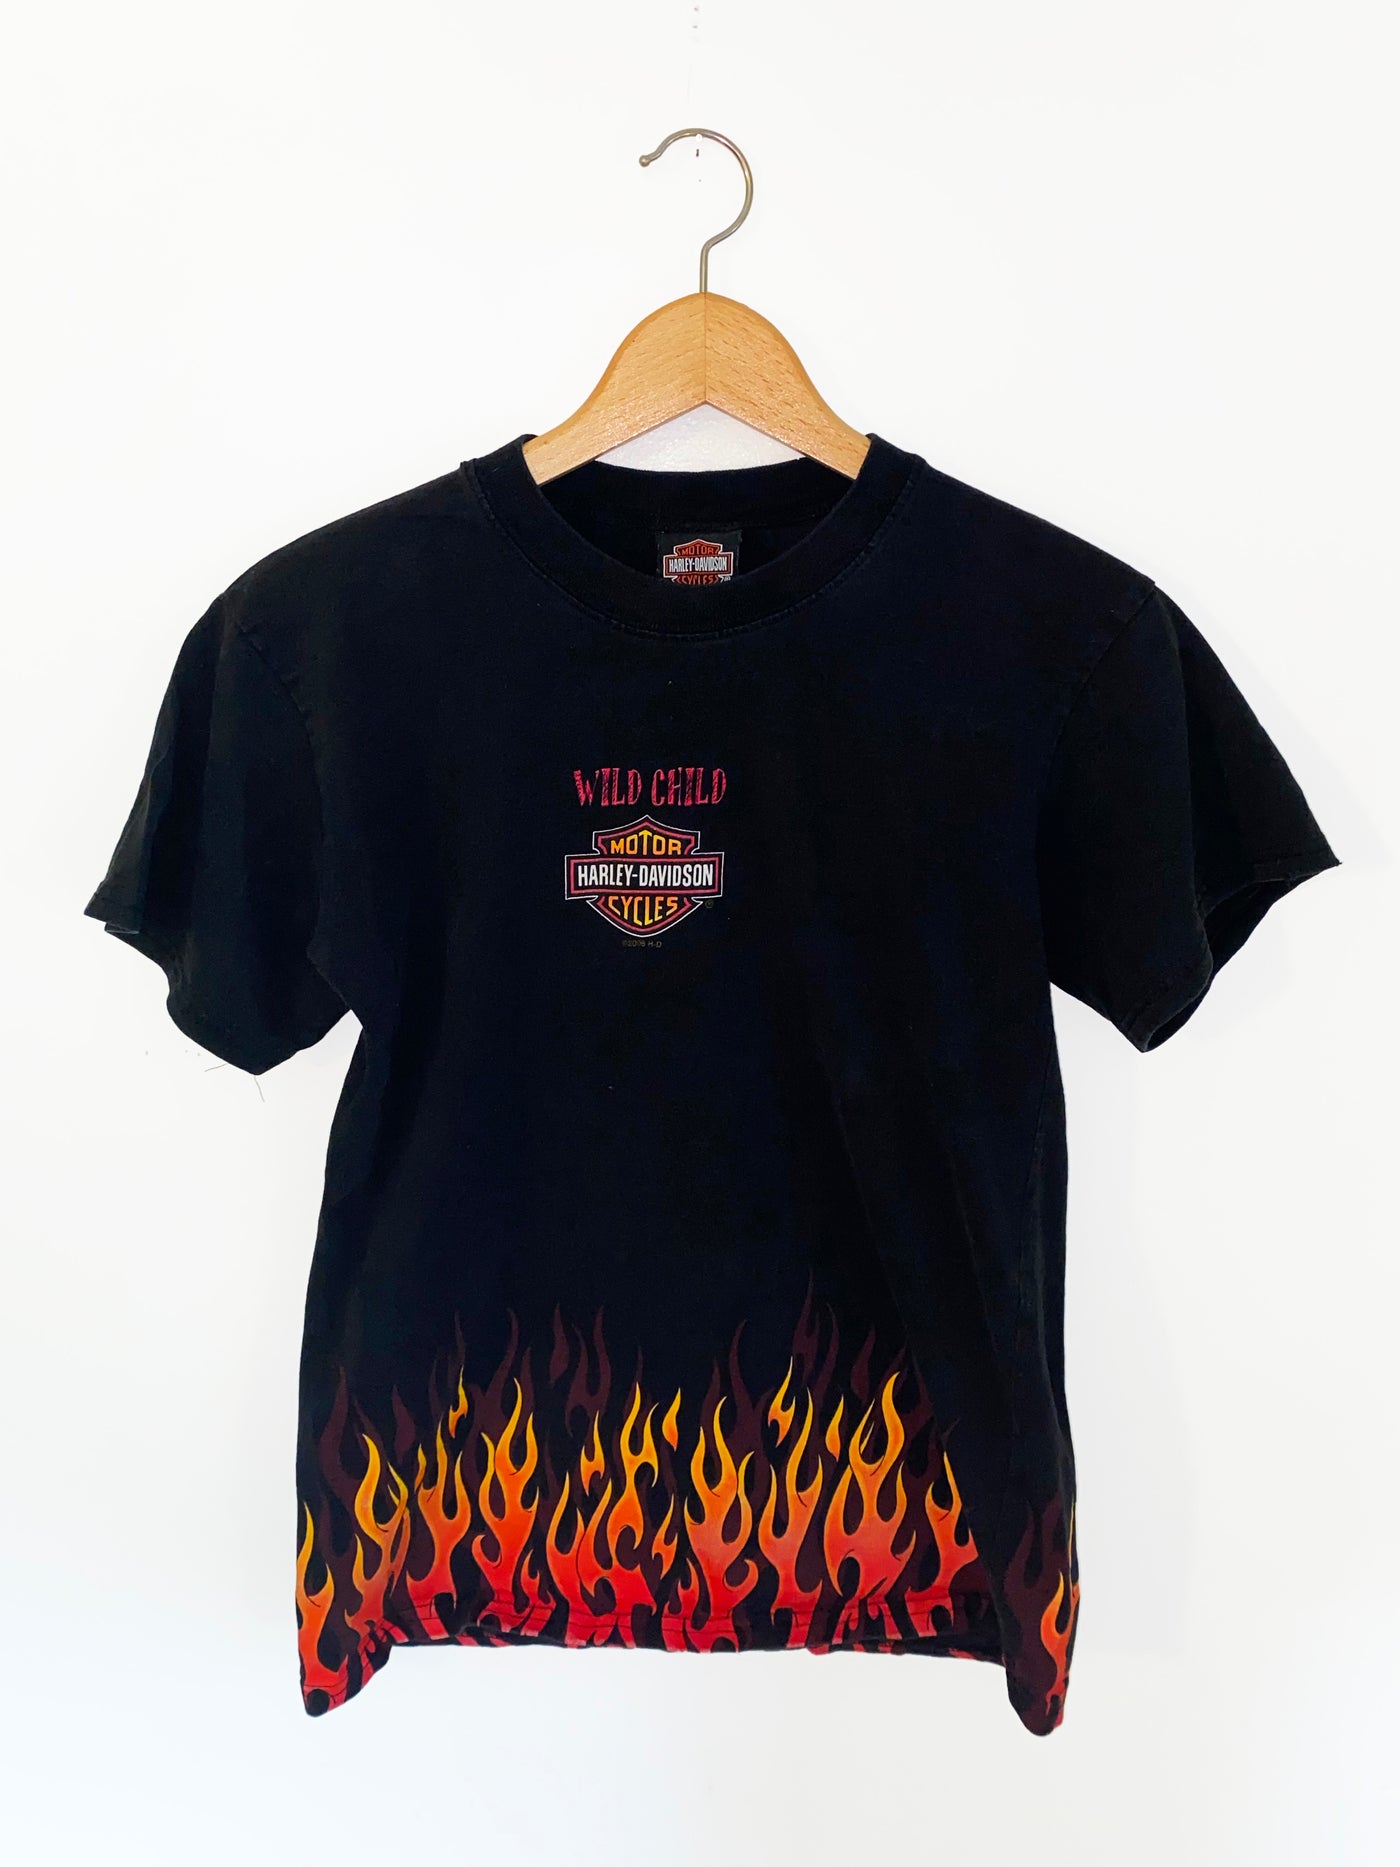 2000s “Wild Child” Harley T-Shirt